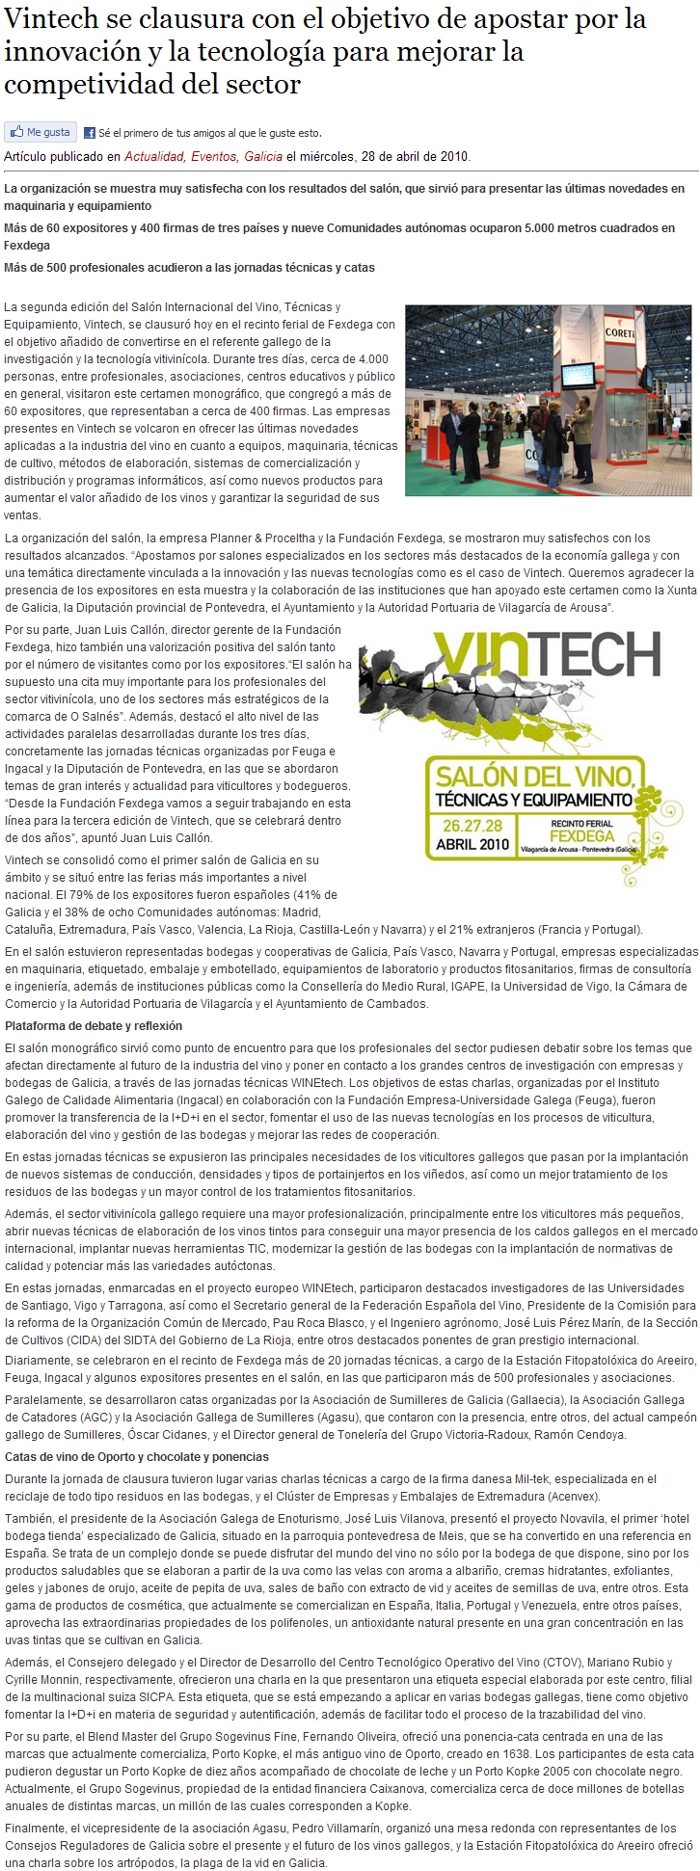 Vintech clausrase co obxectivo de apostar pola innovacin e a tecnoloxa para mellorar a competividad do sector